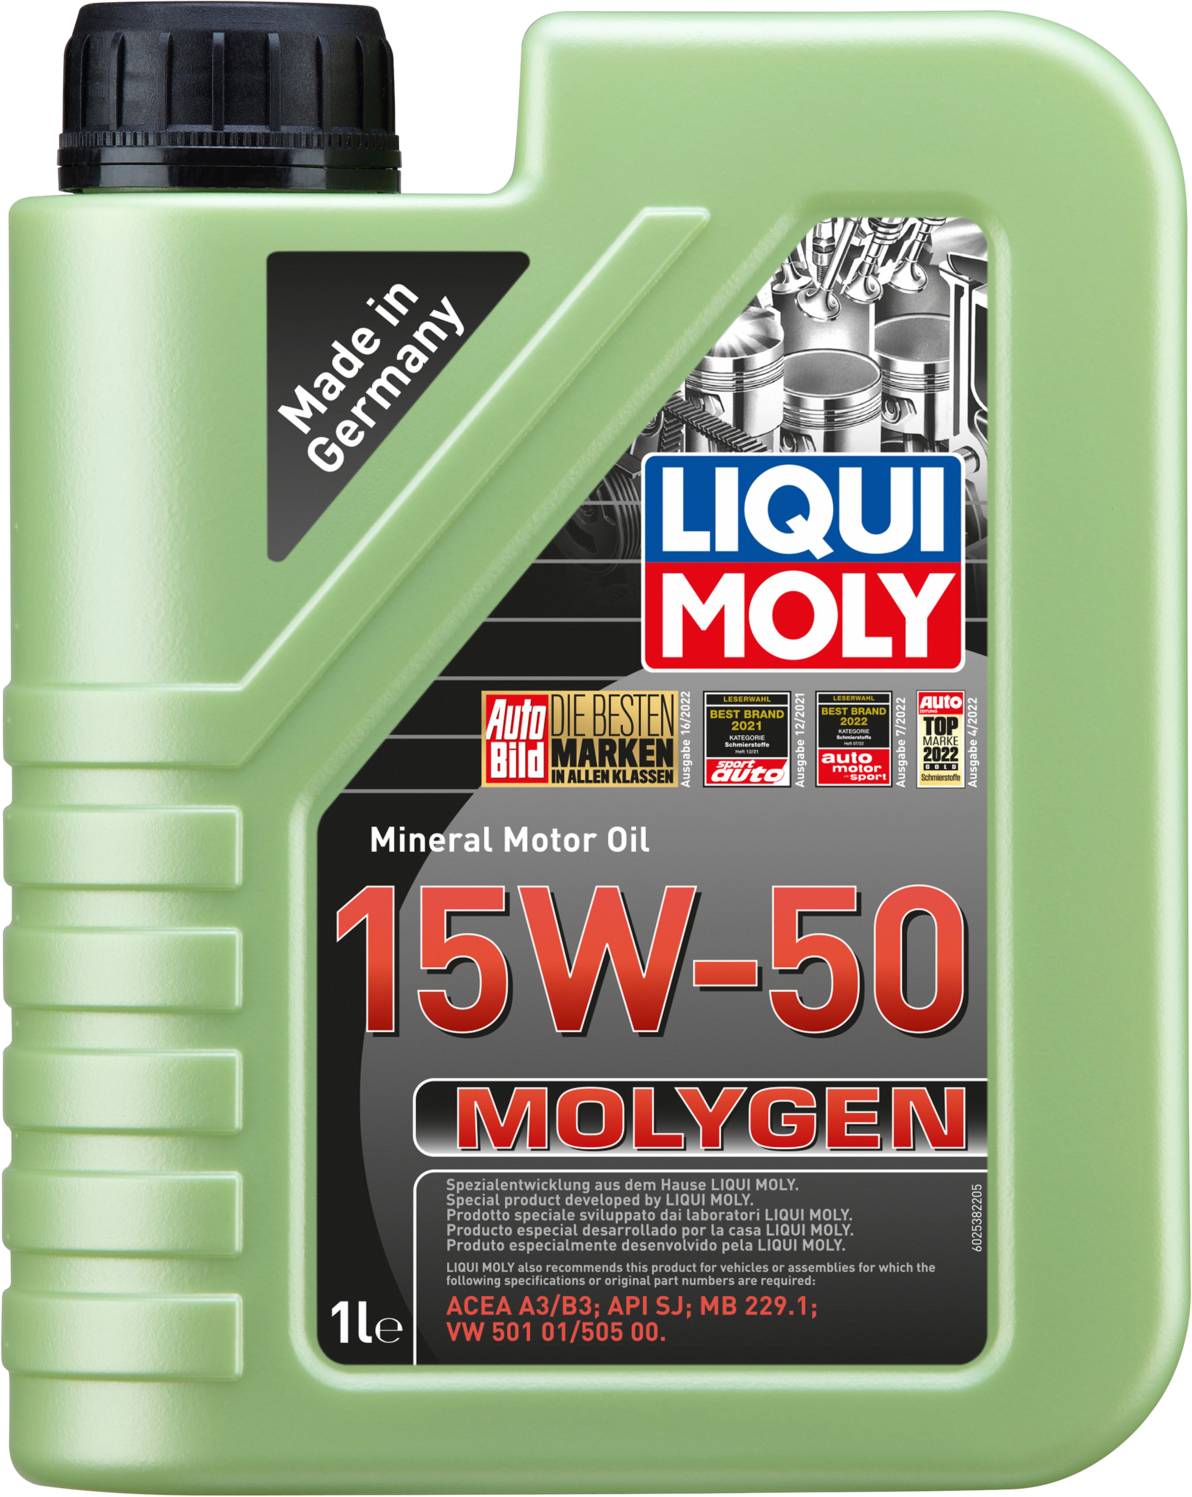 LM2538-1 Liqui Moly Molygen SAE 15W-50 wordt aanbevolen voor benzine- en gasmotoren met inbegrip van motoren met turbocompressoren en katalysatoren.